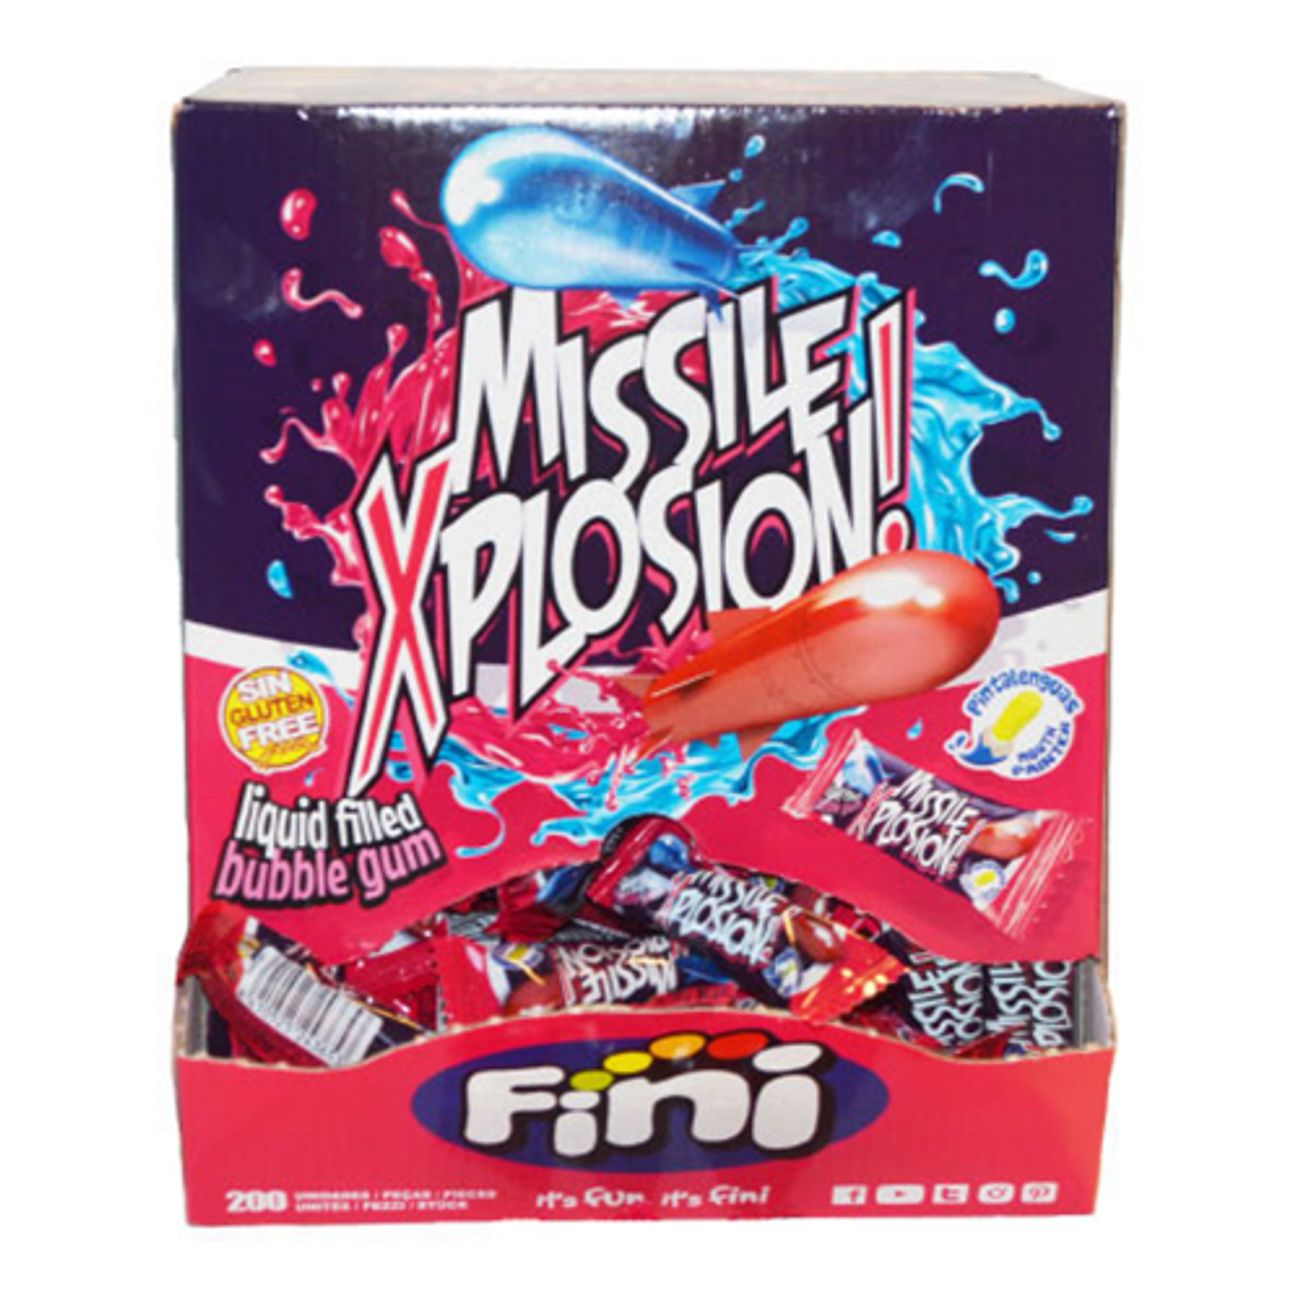 tuggummi-missil-explosion-storpack-75510-1